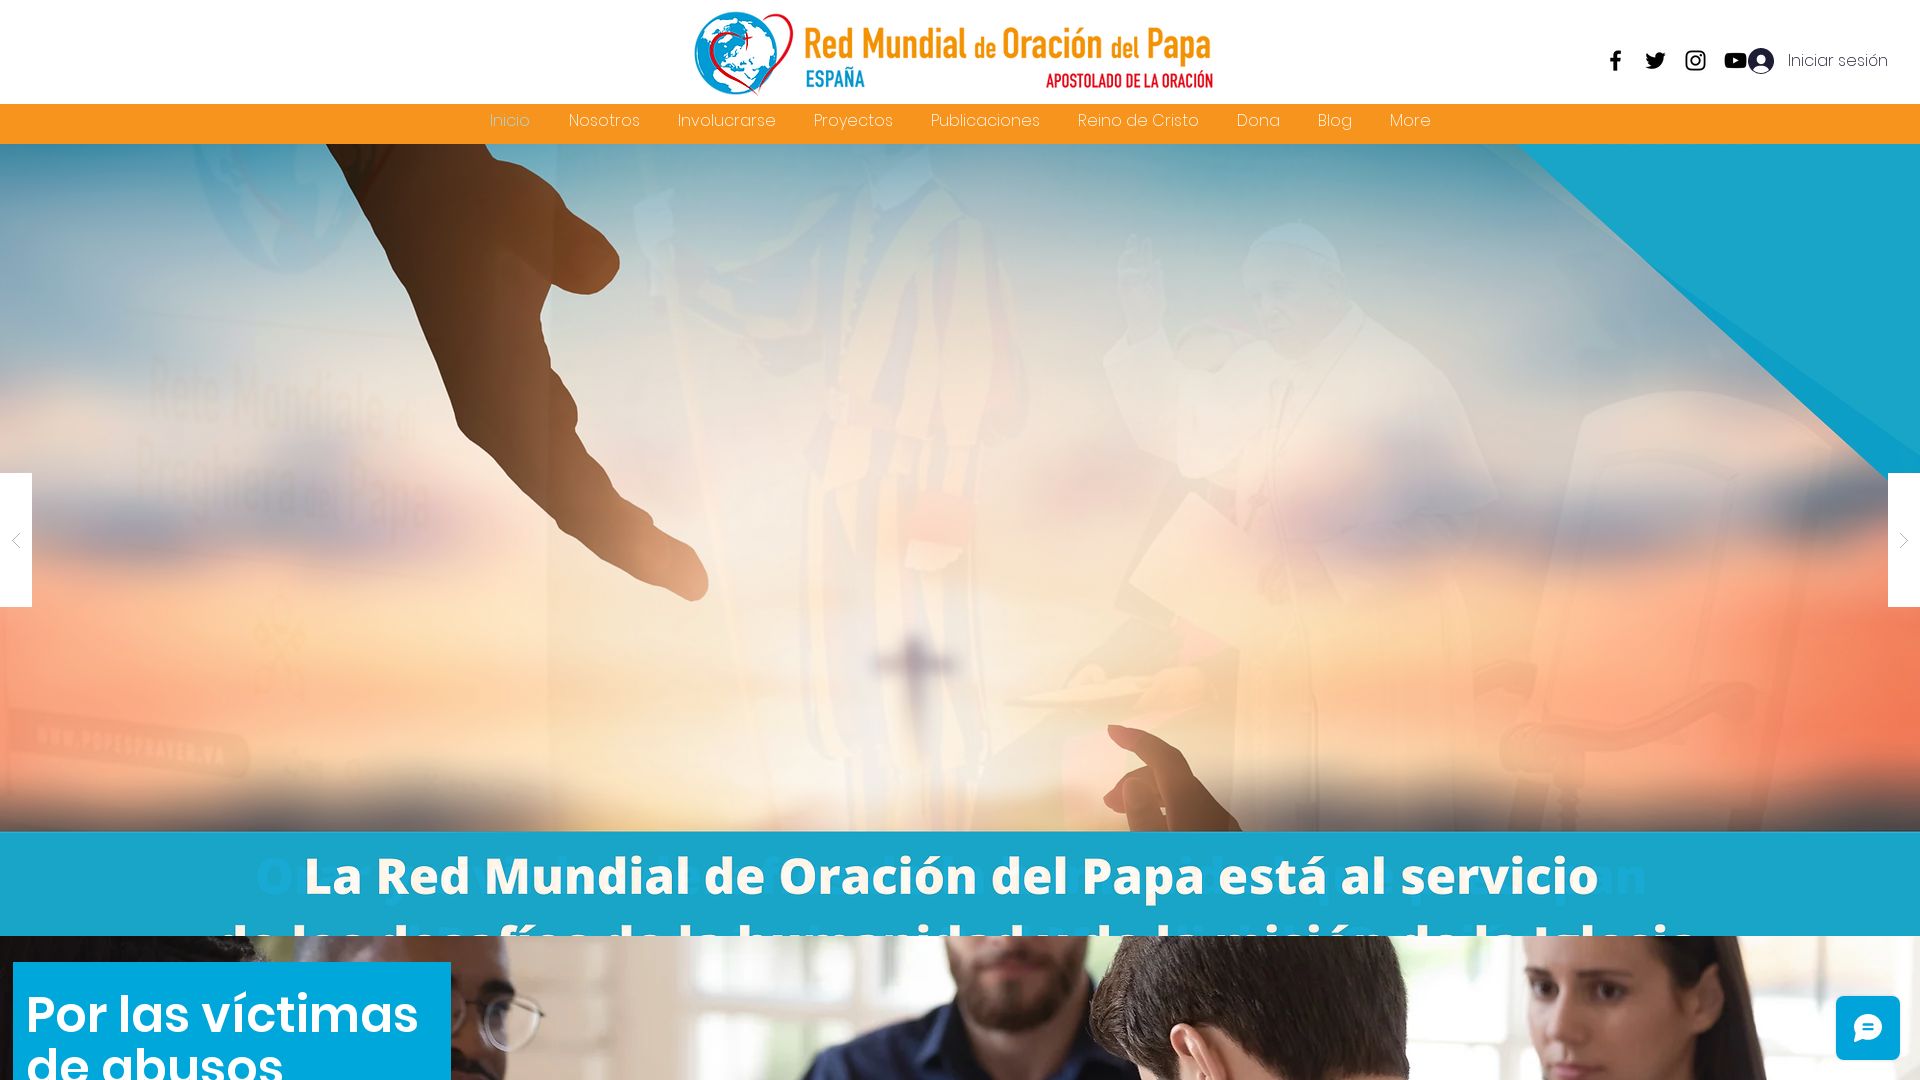 网站状态 redoraciondelpapa.es 是  在线的